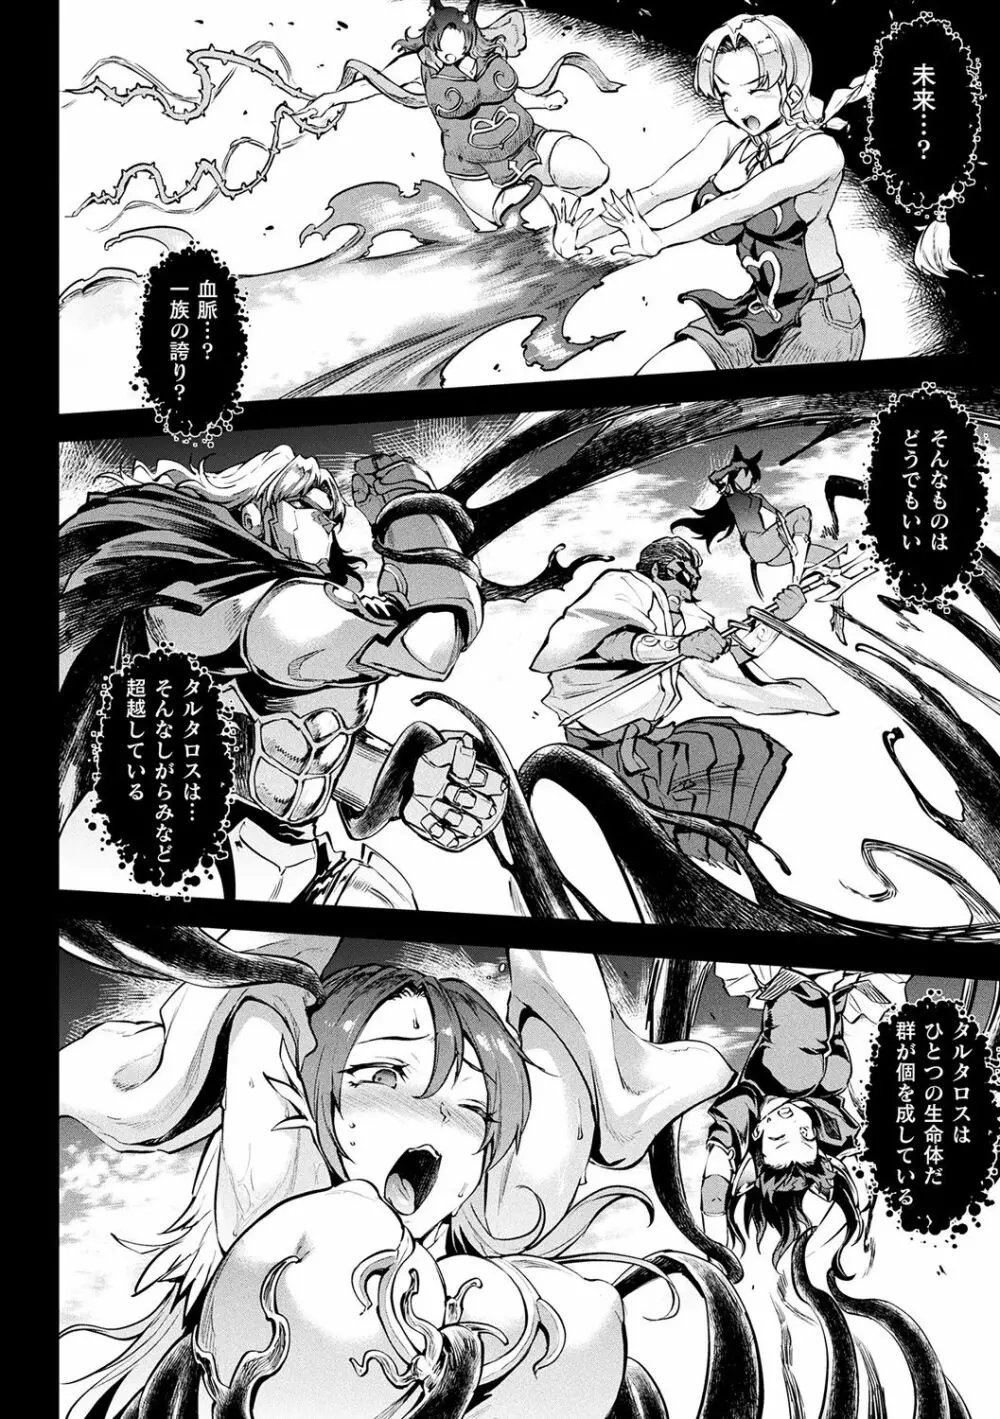 [エレクトさわる] 雷光神姫アイギスマギアII -PANDRA saga 3rd ignition- + 電子書籍特典デジタルポスター [DL版] 174ページ